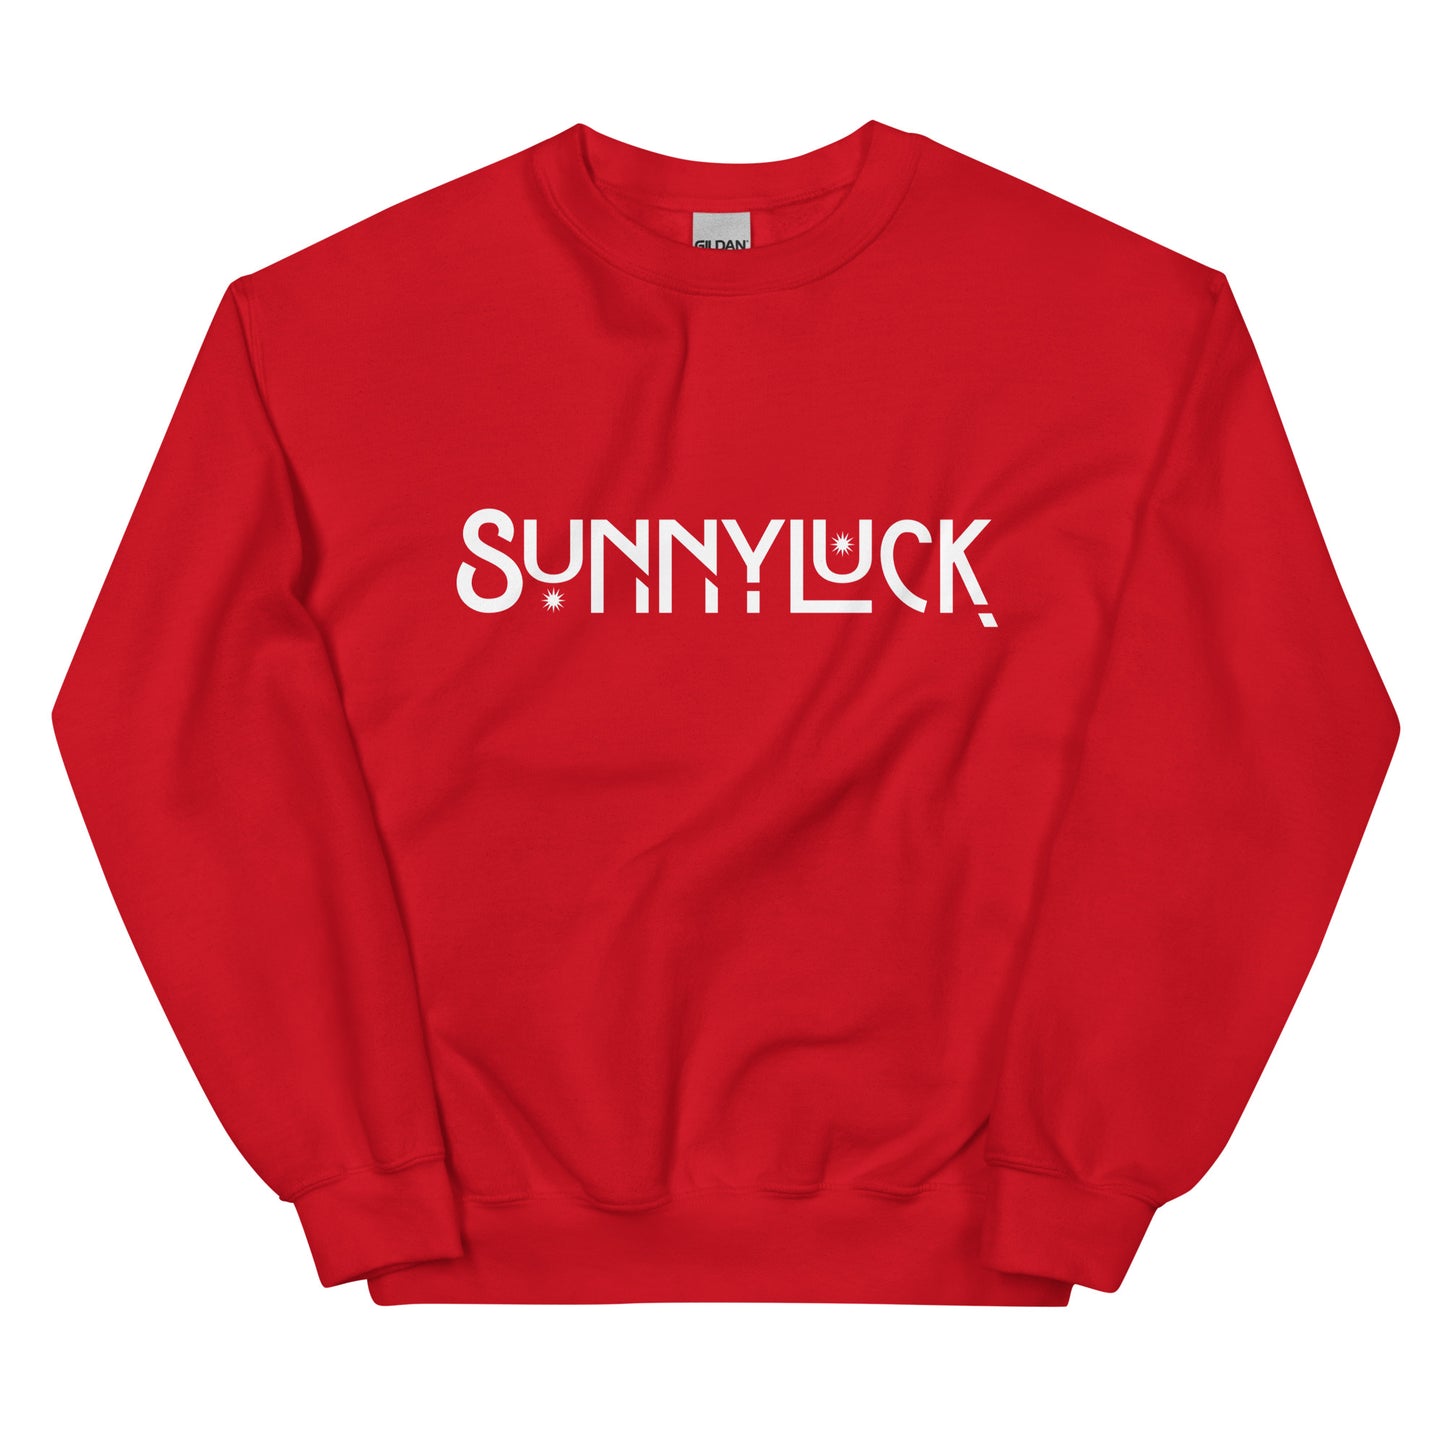 The SunnyLuck Sweatshirt